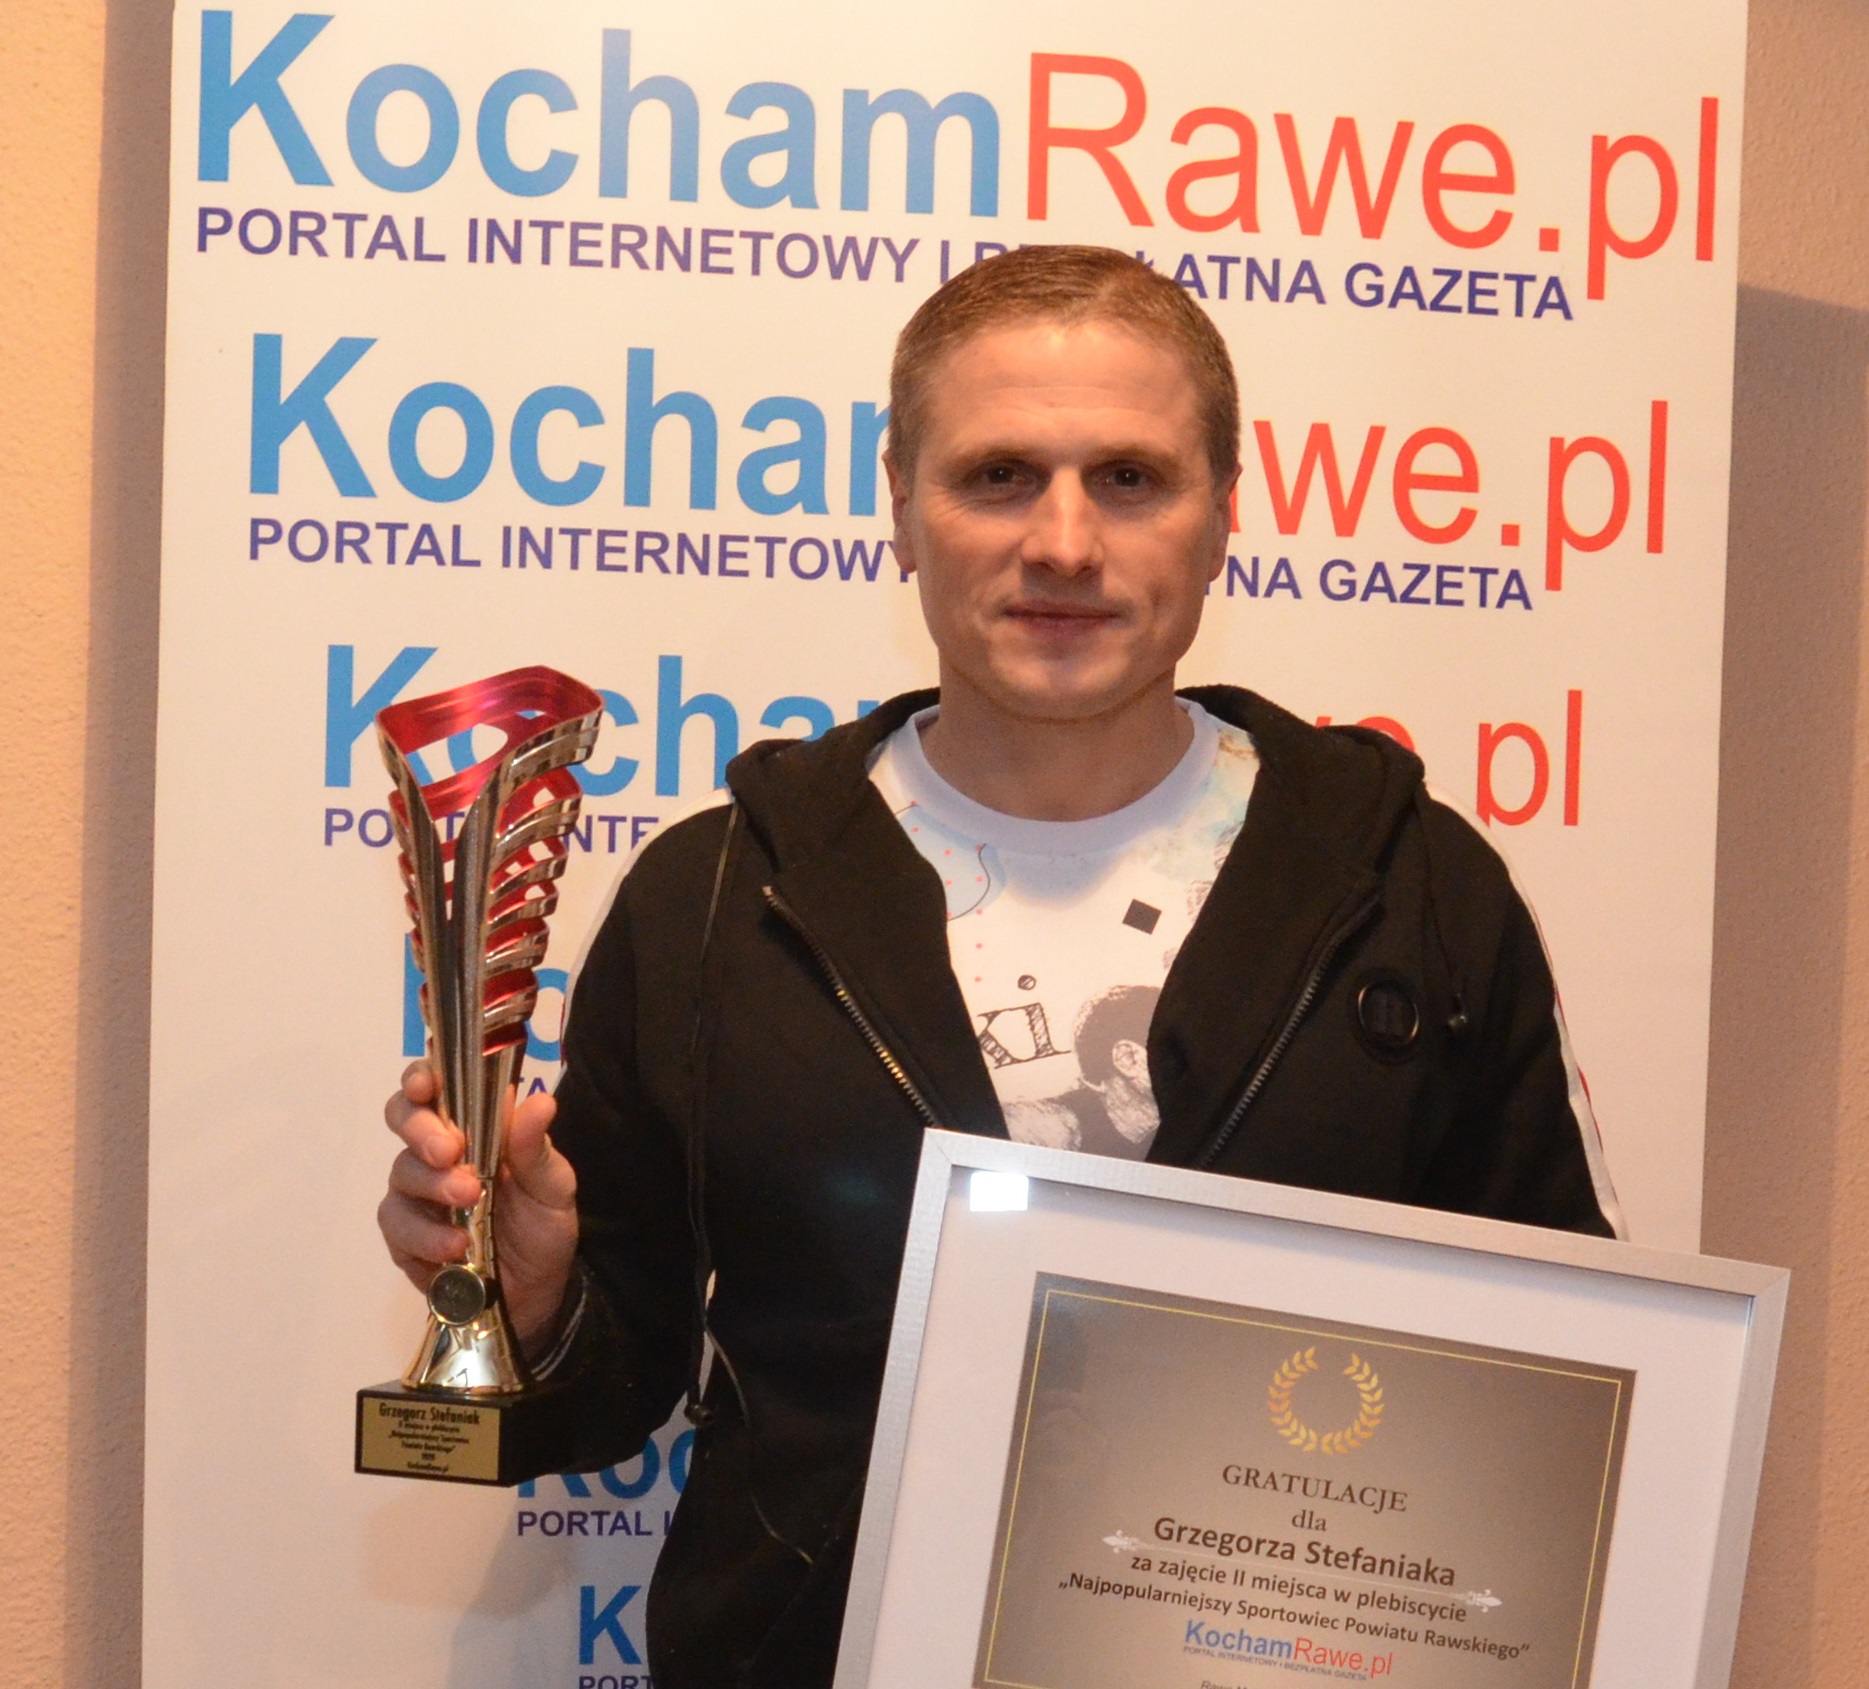 Grzegorz Stefaniak / KochamRawe.pl